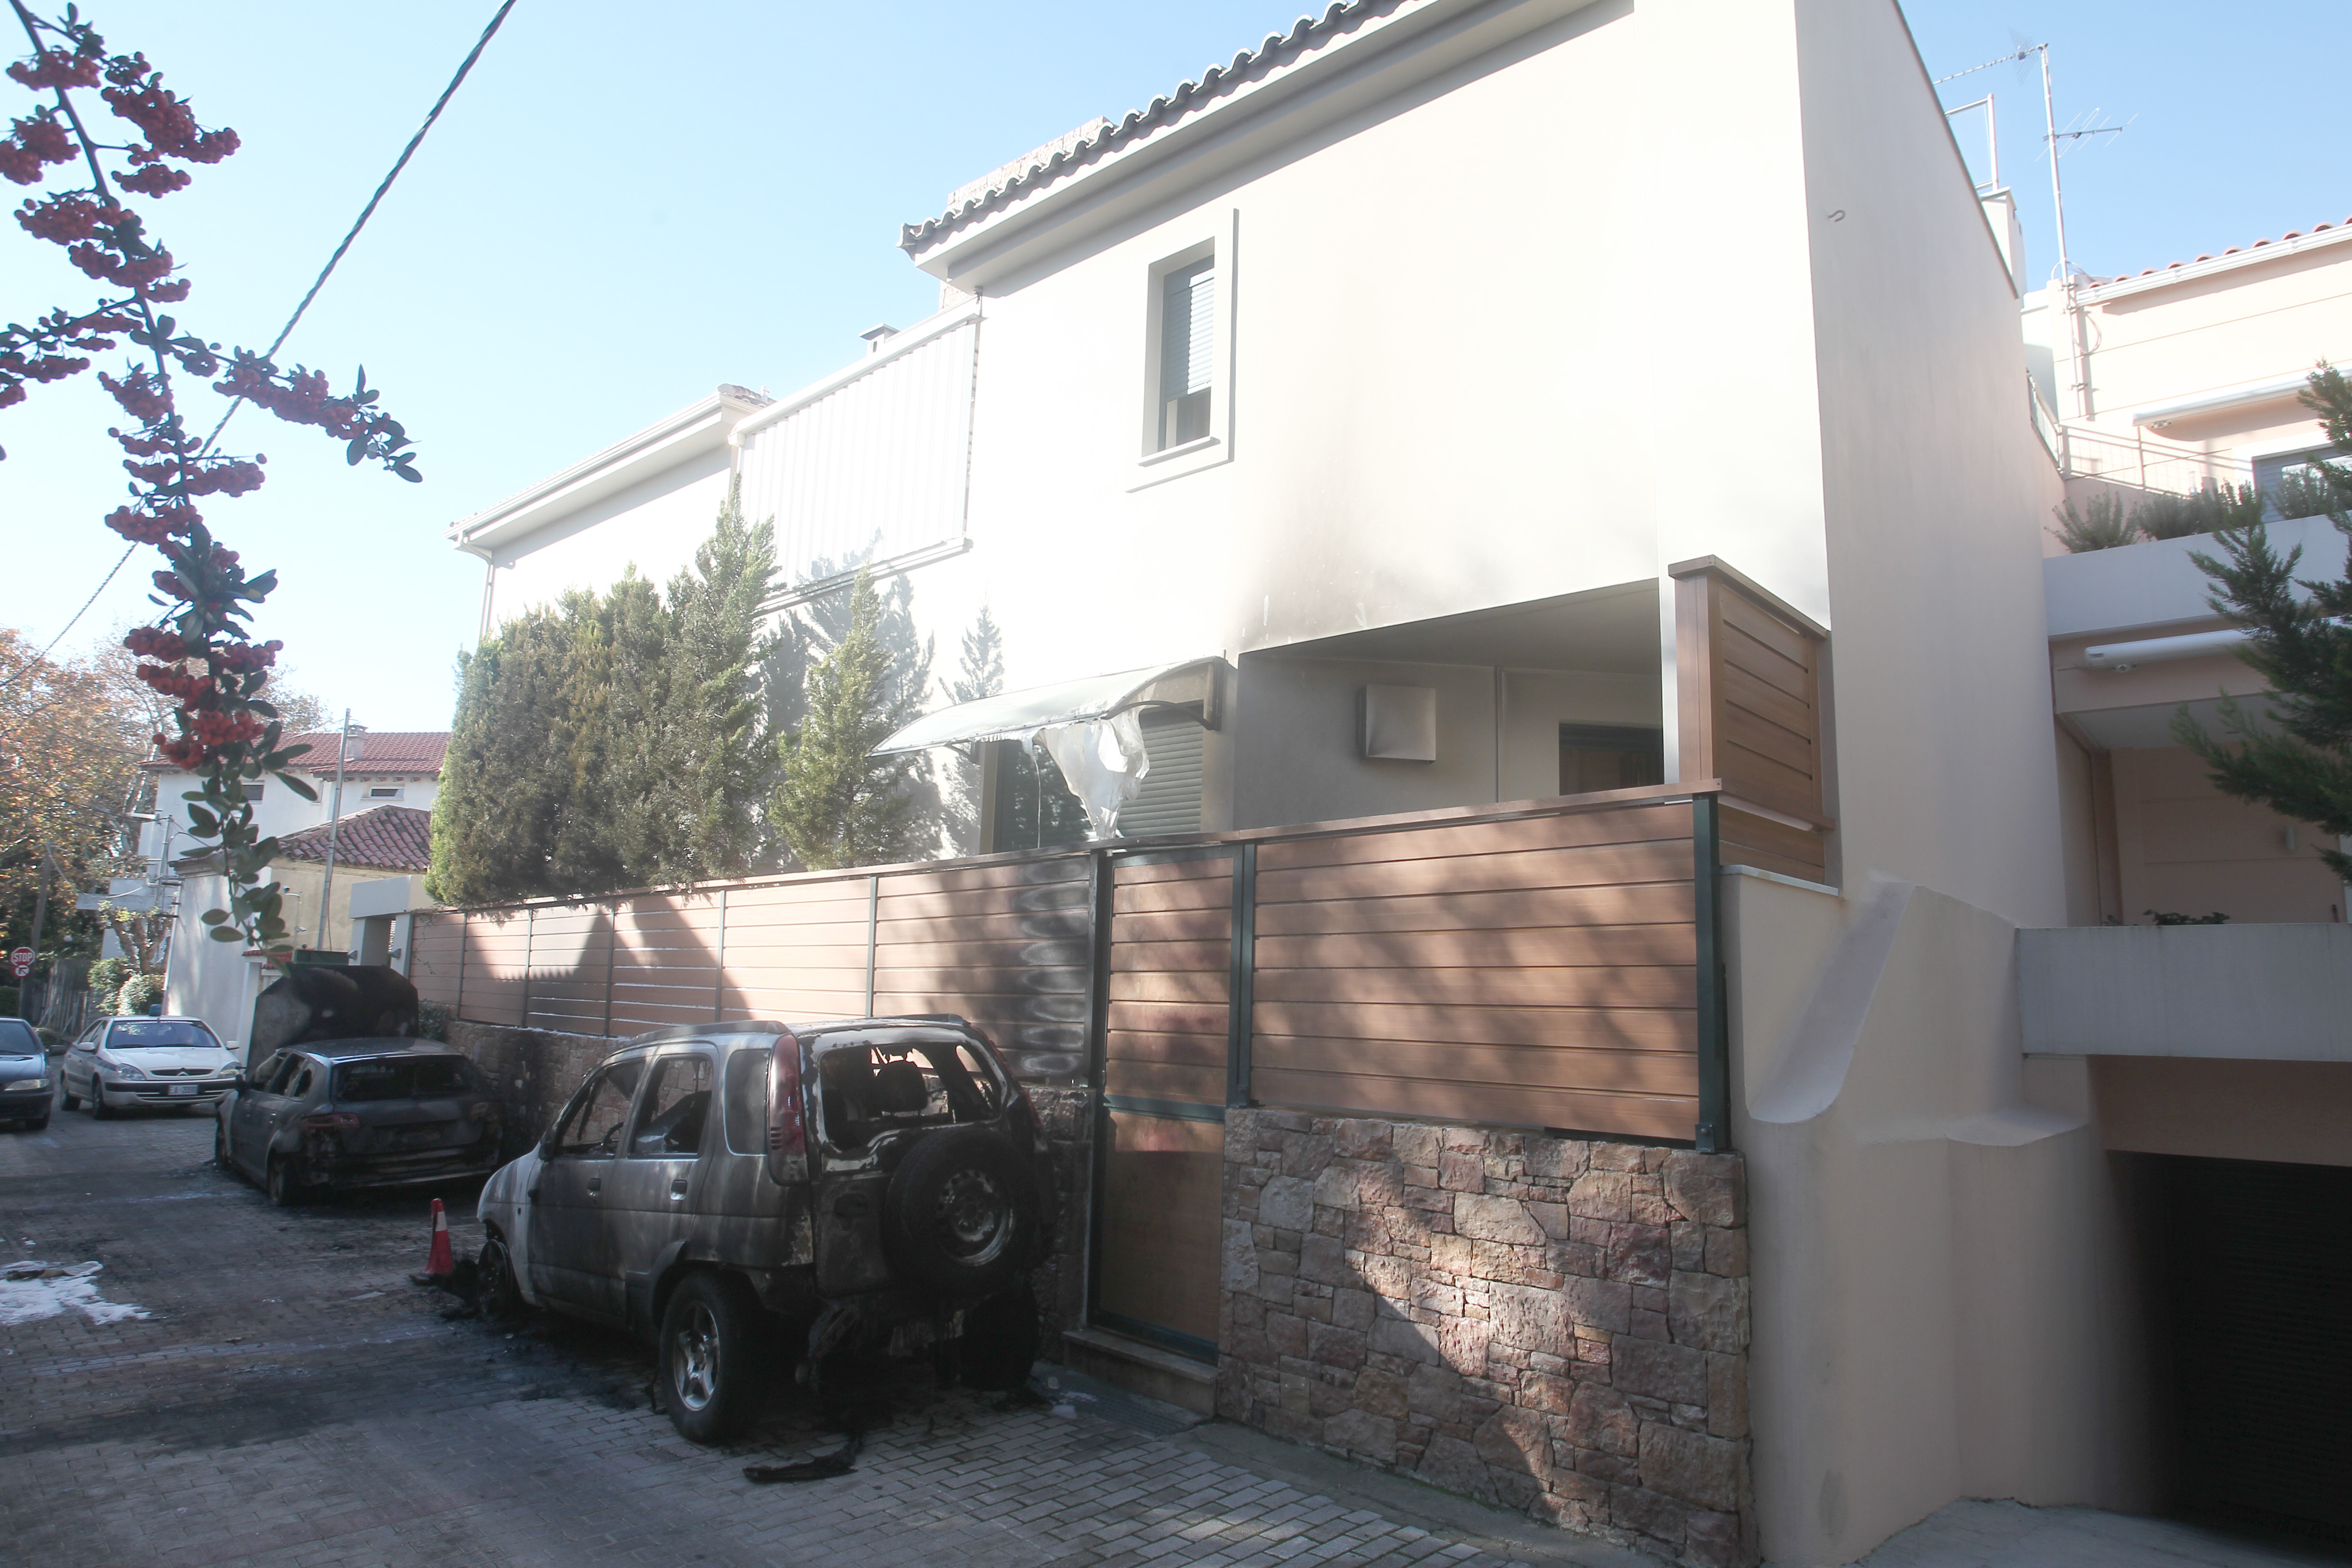 Εμπρηστική επίθεση σε αυτοκίνητα έξω από την οικία του Γ. Παπαντωνίου